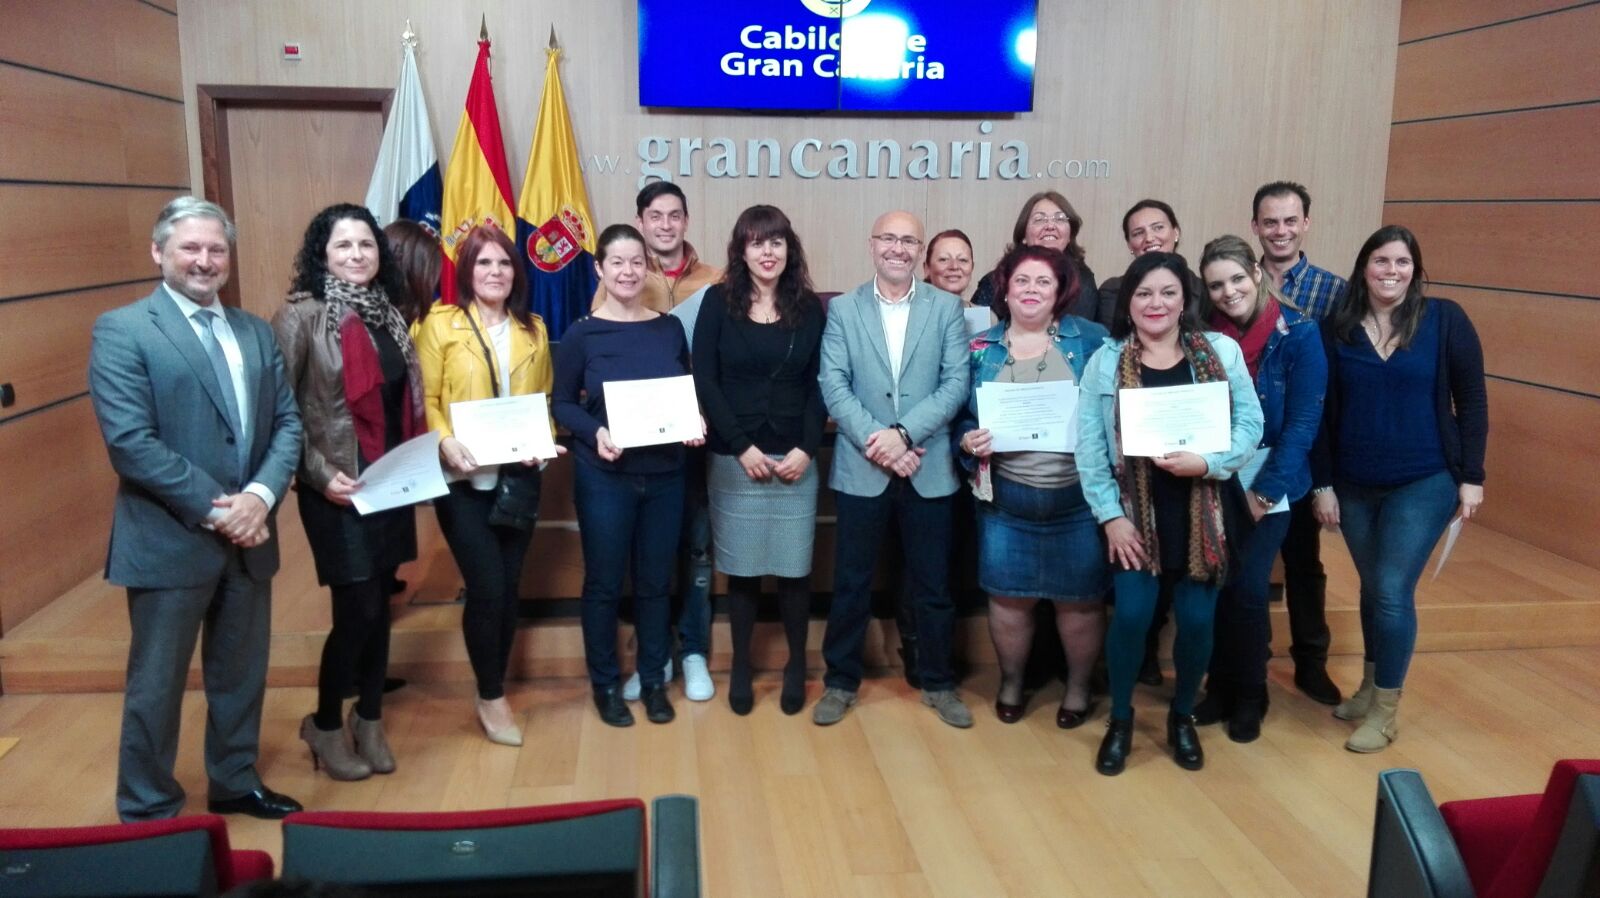 El Cabildo entrega los diplomas formativos a 23 dinamizadores y gerentes de zonas comerciales abiertas de Gran Canaria